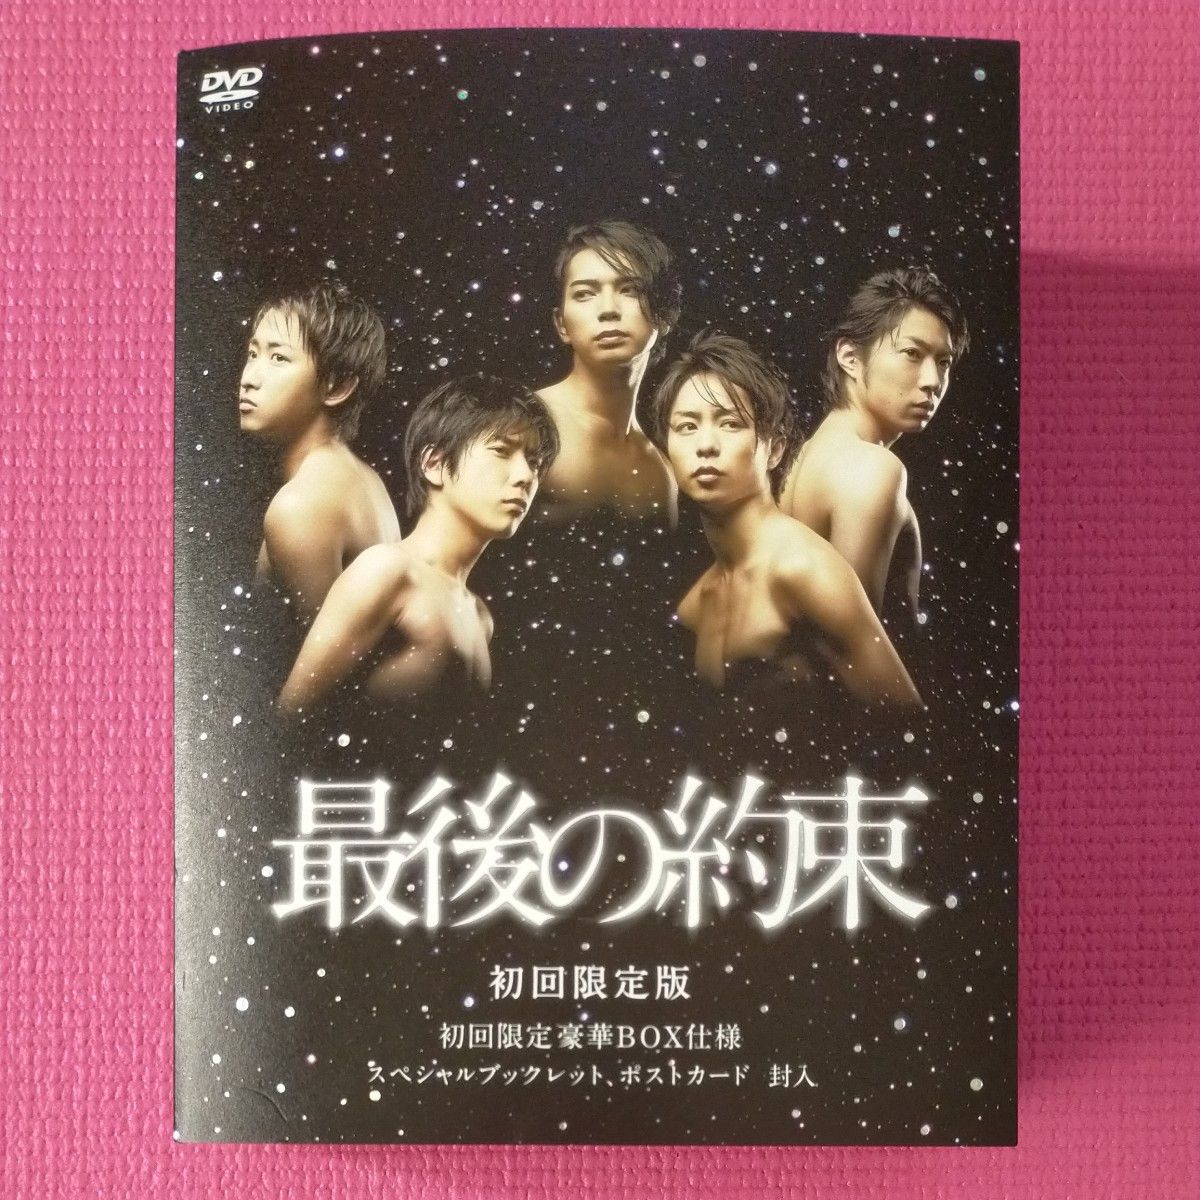 嵐主演  最後の約束 DVD 初回限定盤BOX